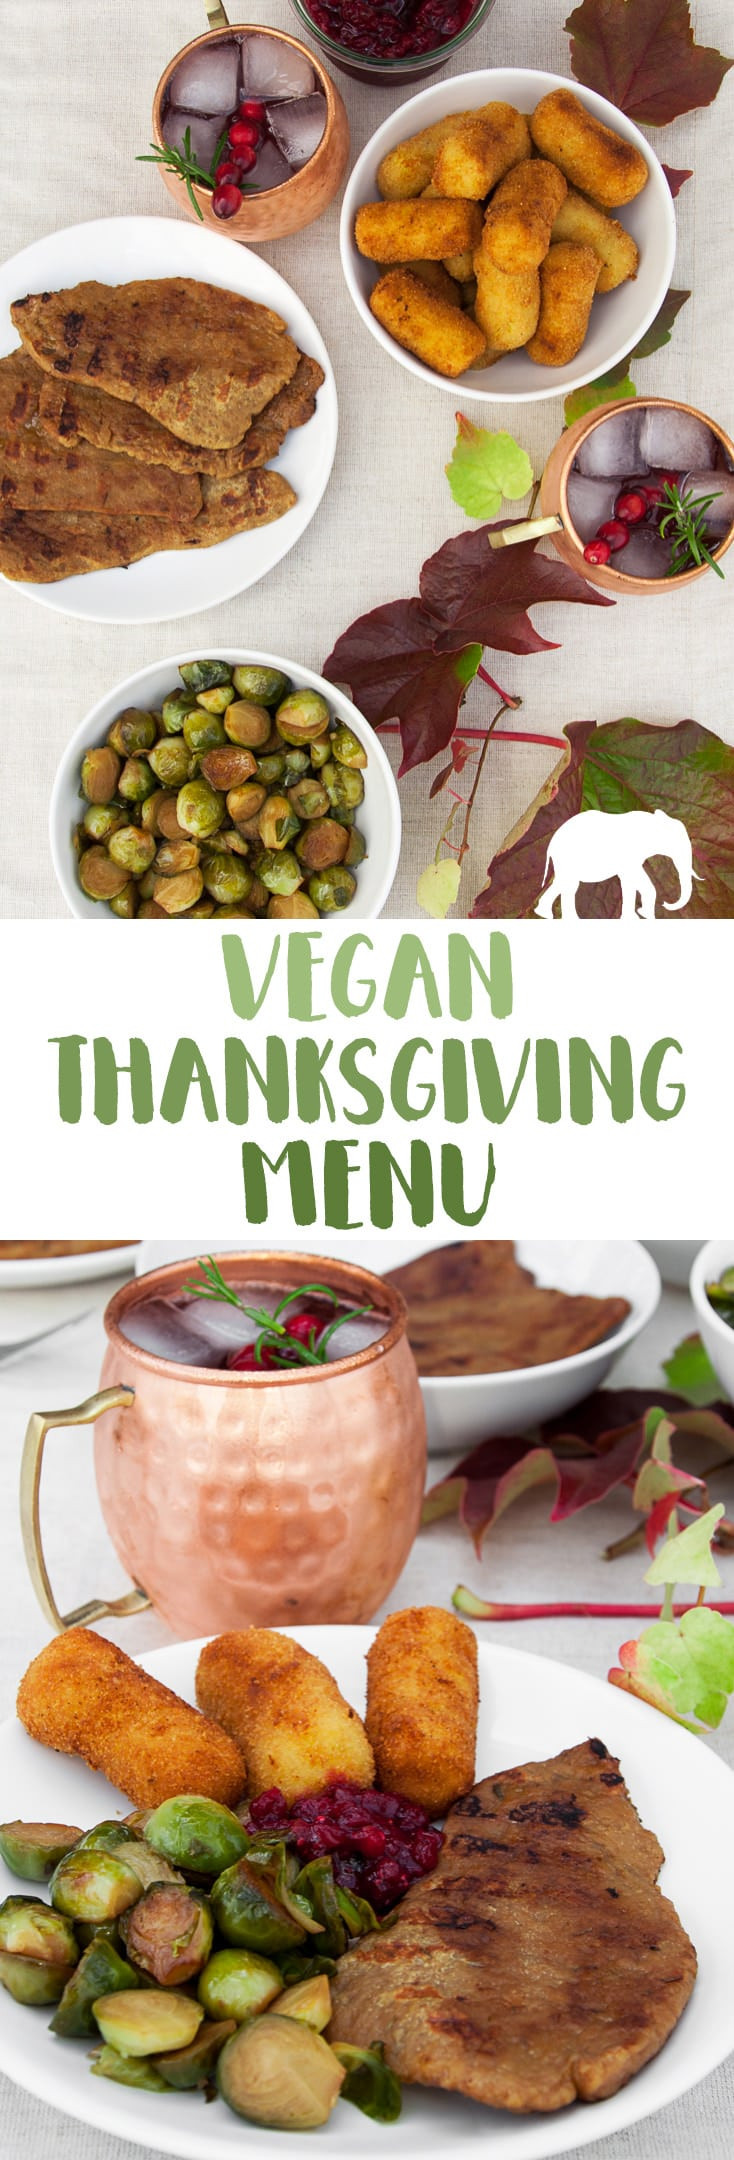 Vegetarian Thanksgiving Menu
 Vegan Thanksgiving Menu Recipes